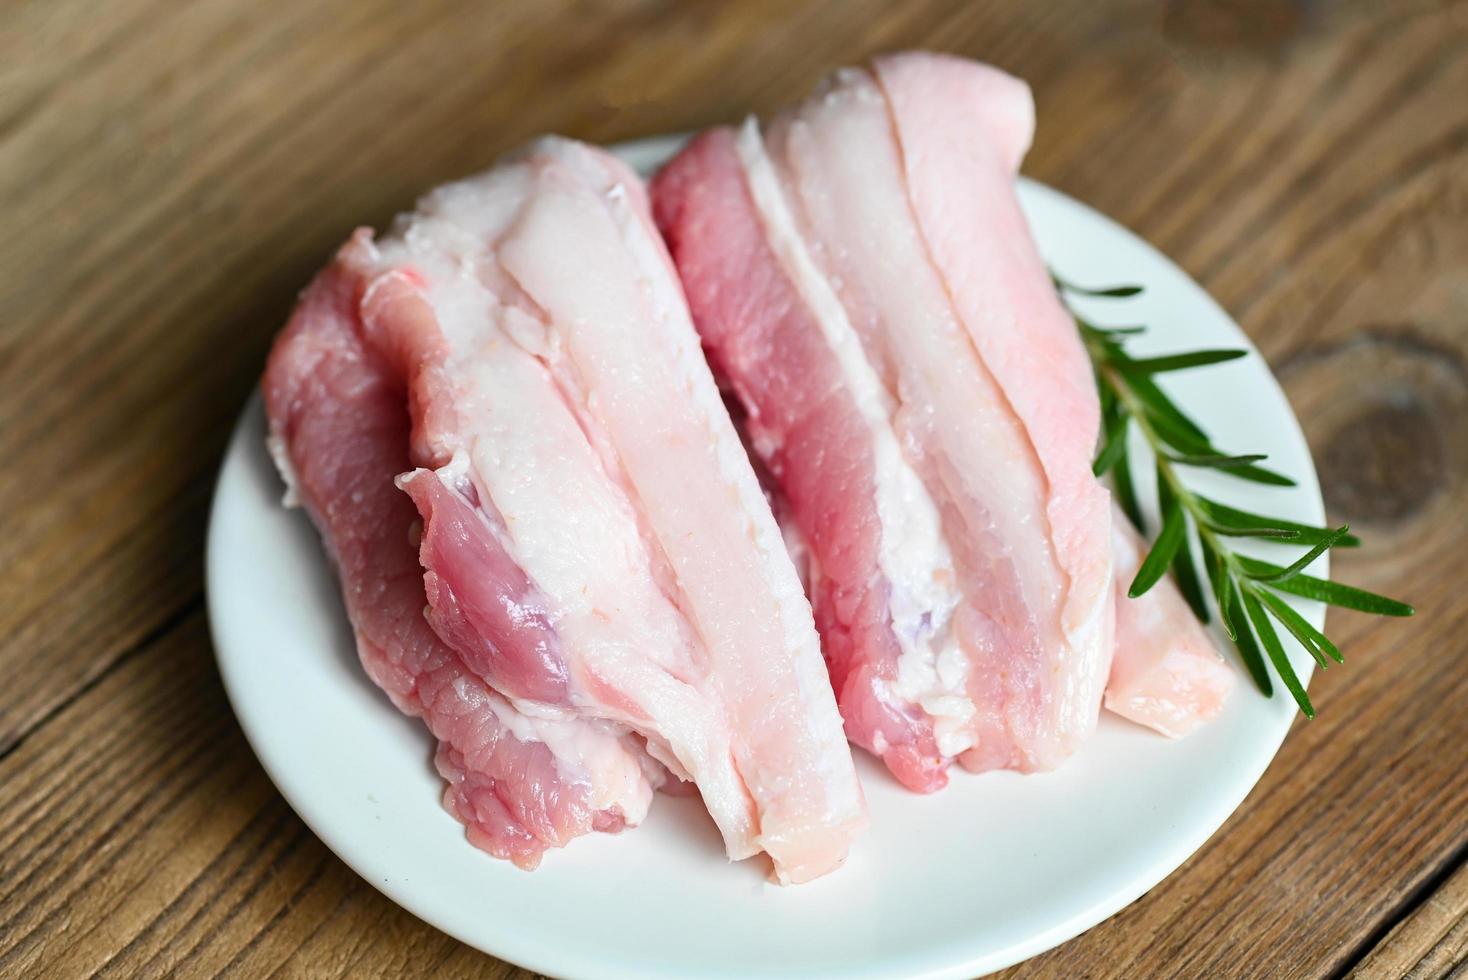 varkensvlees Aan houten bord met rozemarijn, vers rauw buikspek varkensvlees vlees voor Koken voedsel, varkensvlees huid varken huid - top visie foto